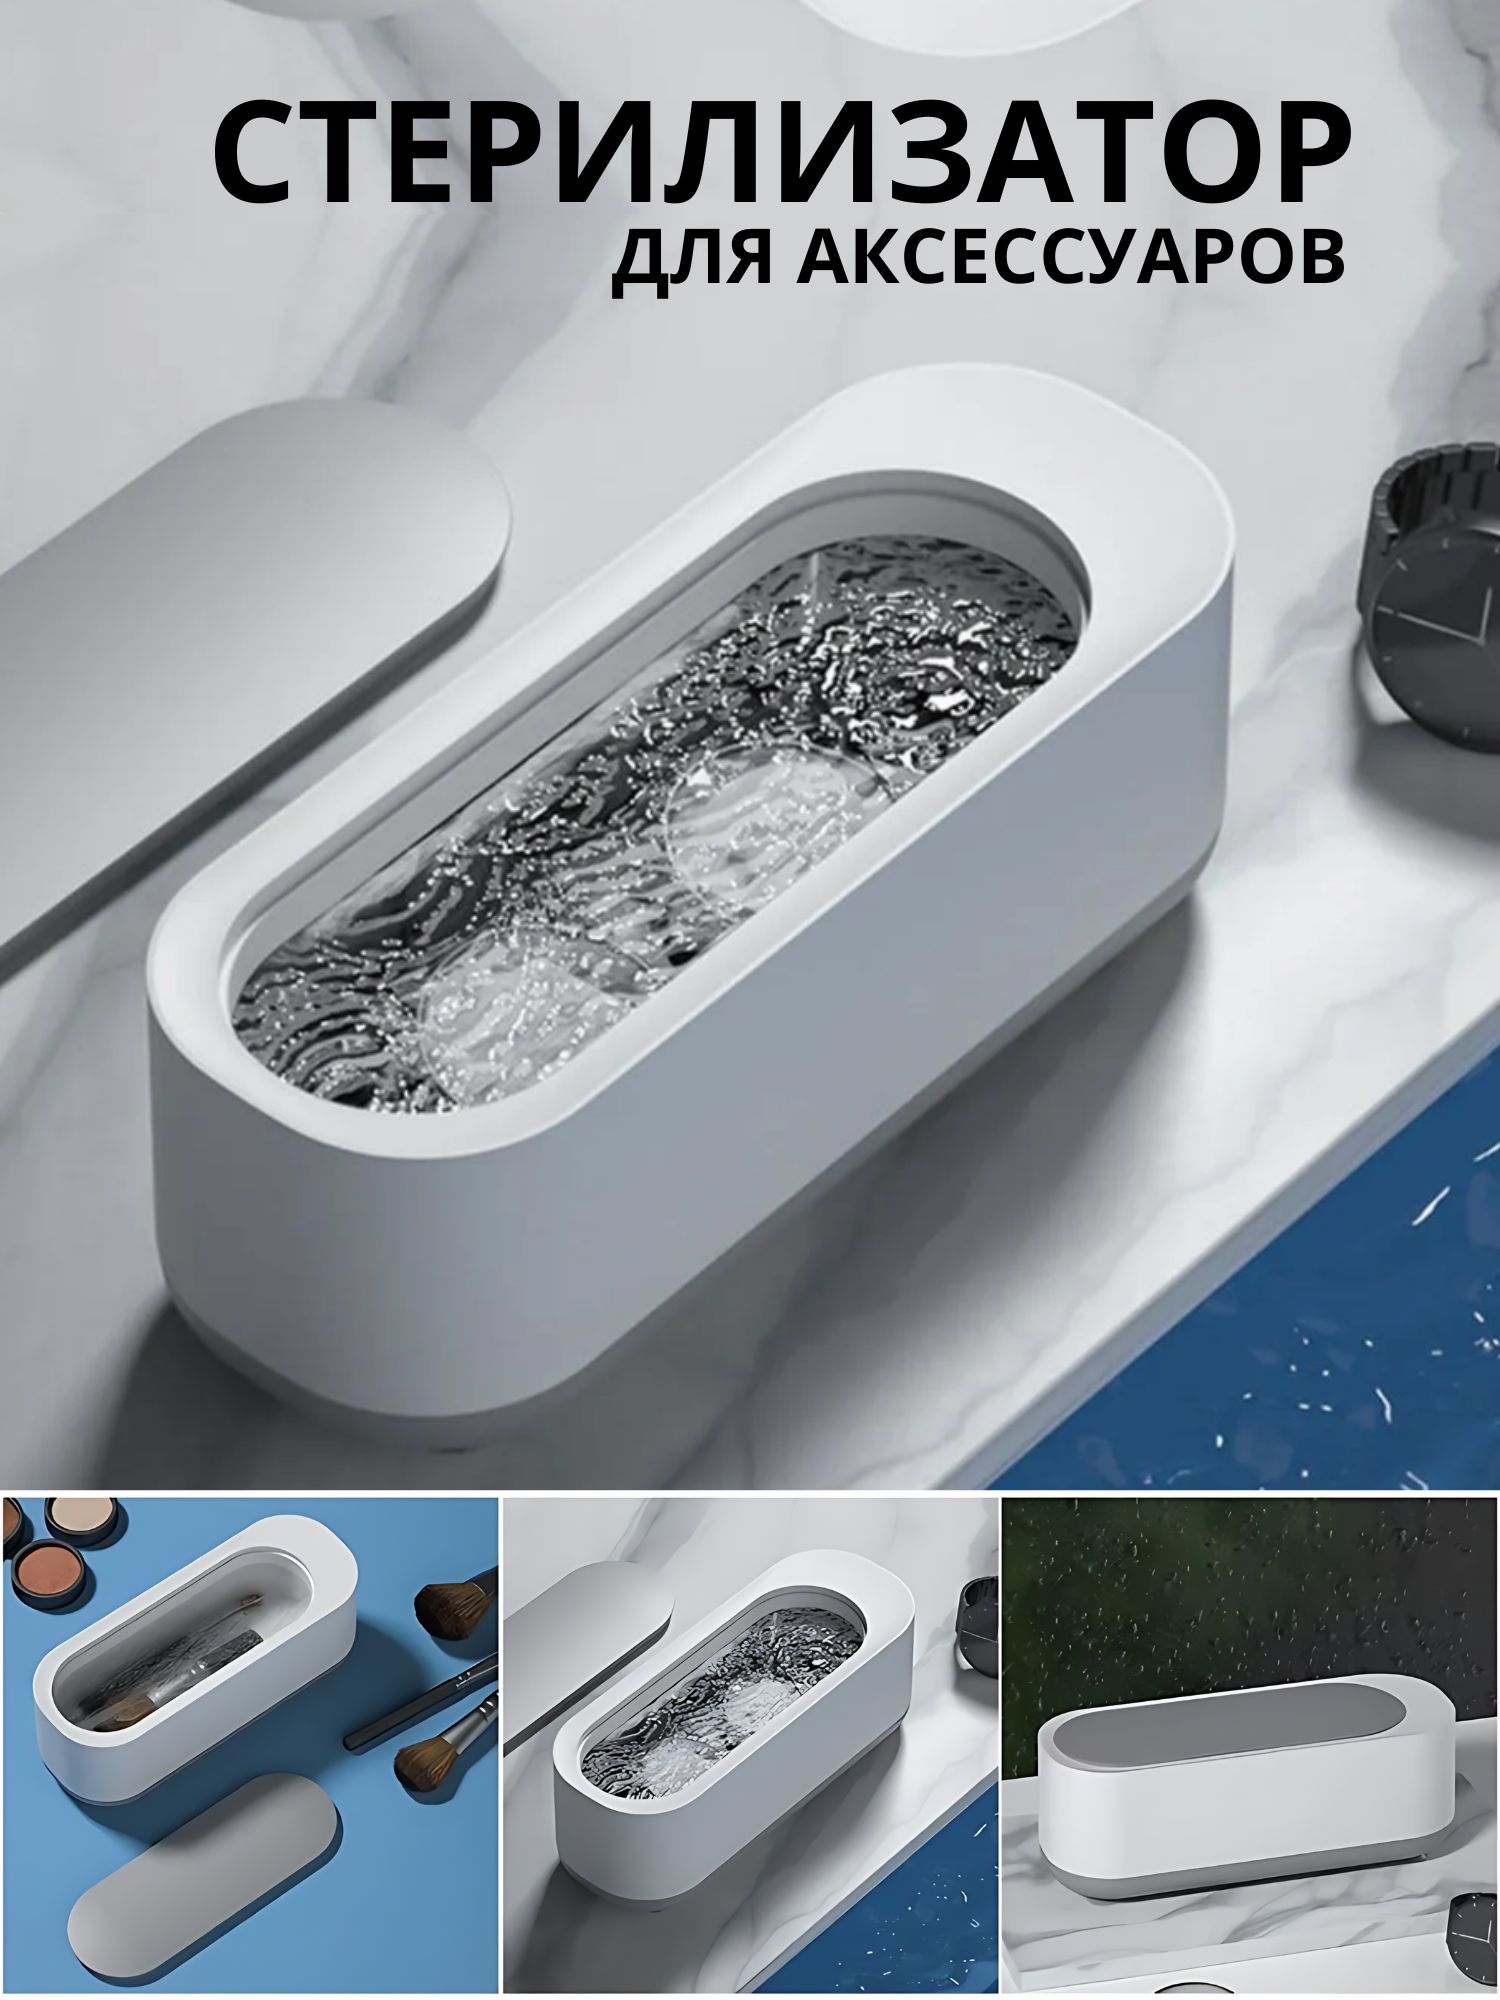 Ультразвуковая ванна для аксессуаров, с крышкой, цвет бело-серый